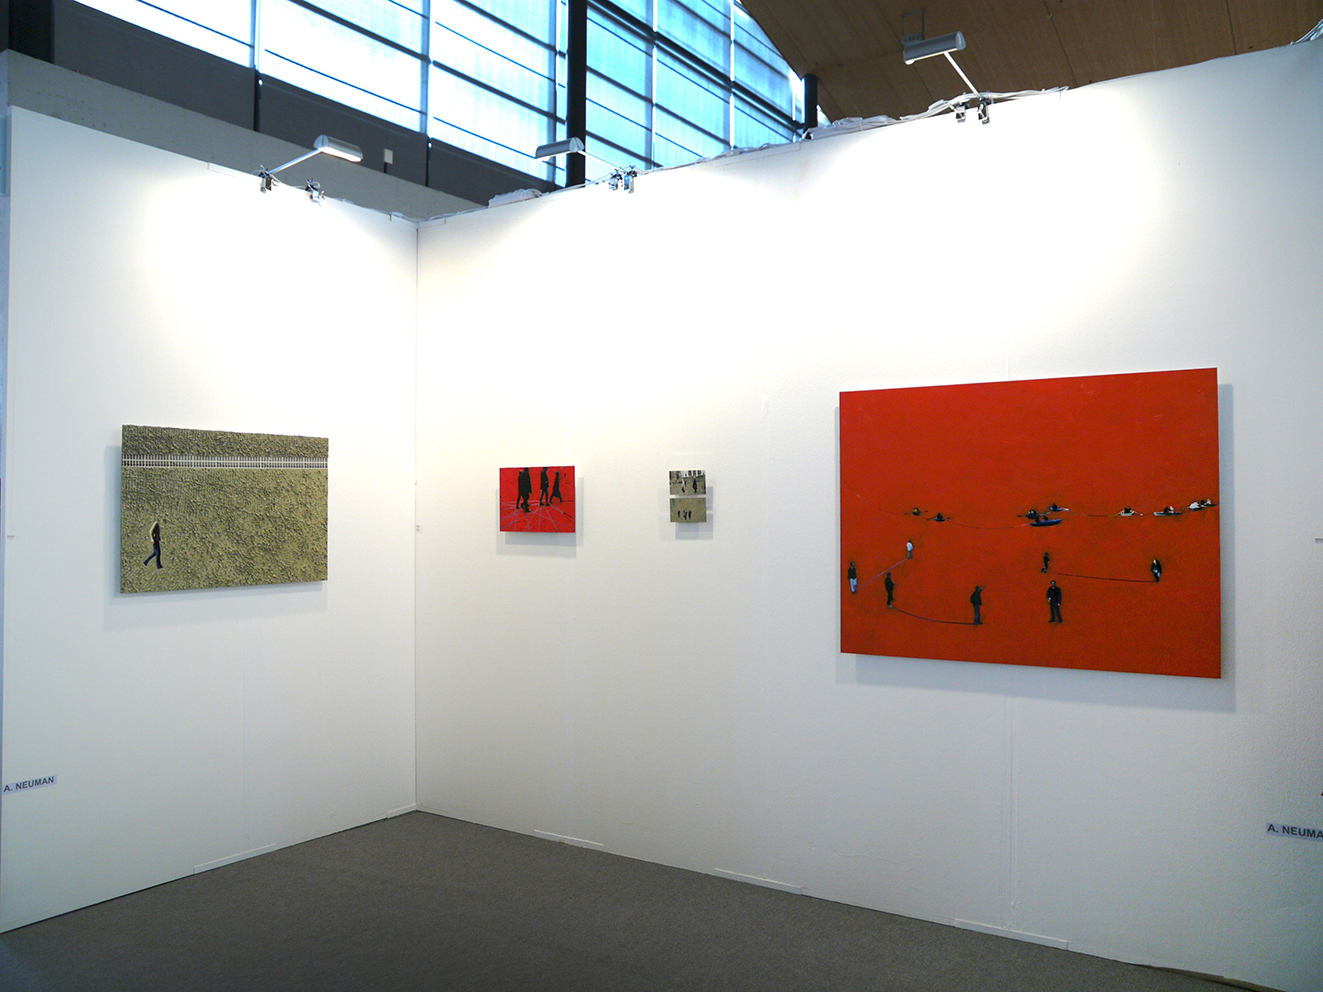 andrea-neuman-2010-exhibit-artkarlsruhe-galerie-witzel-11-web